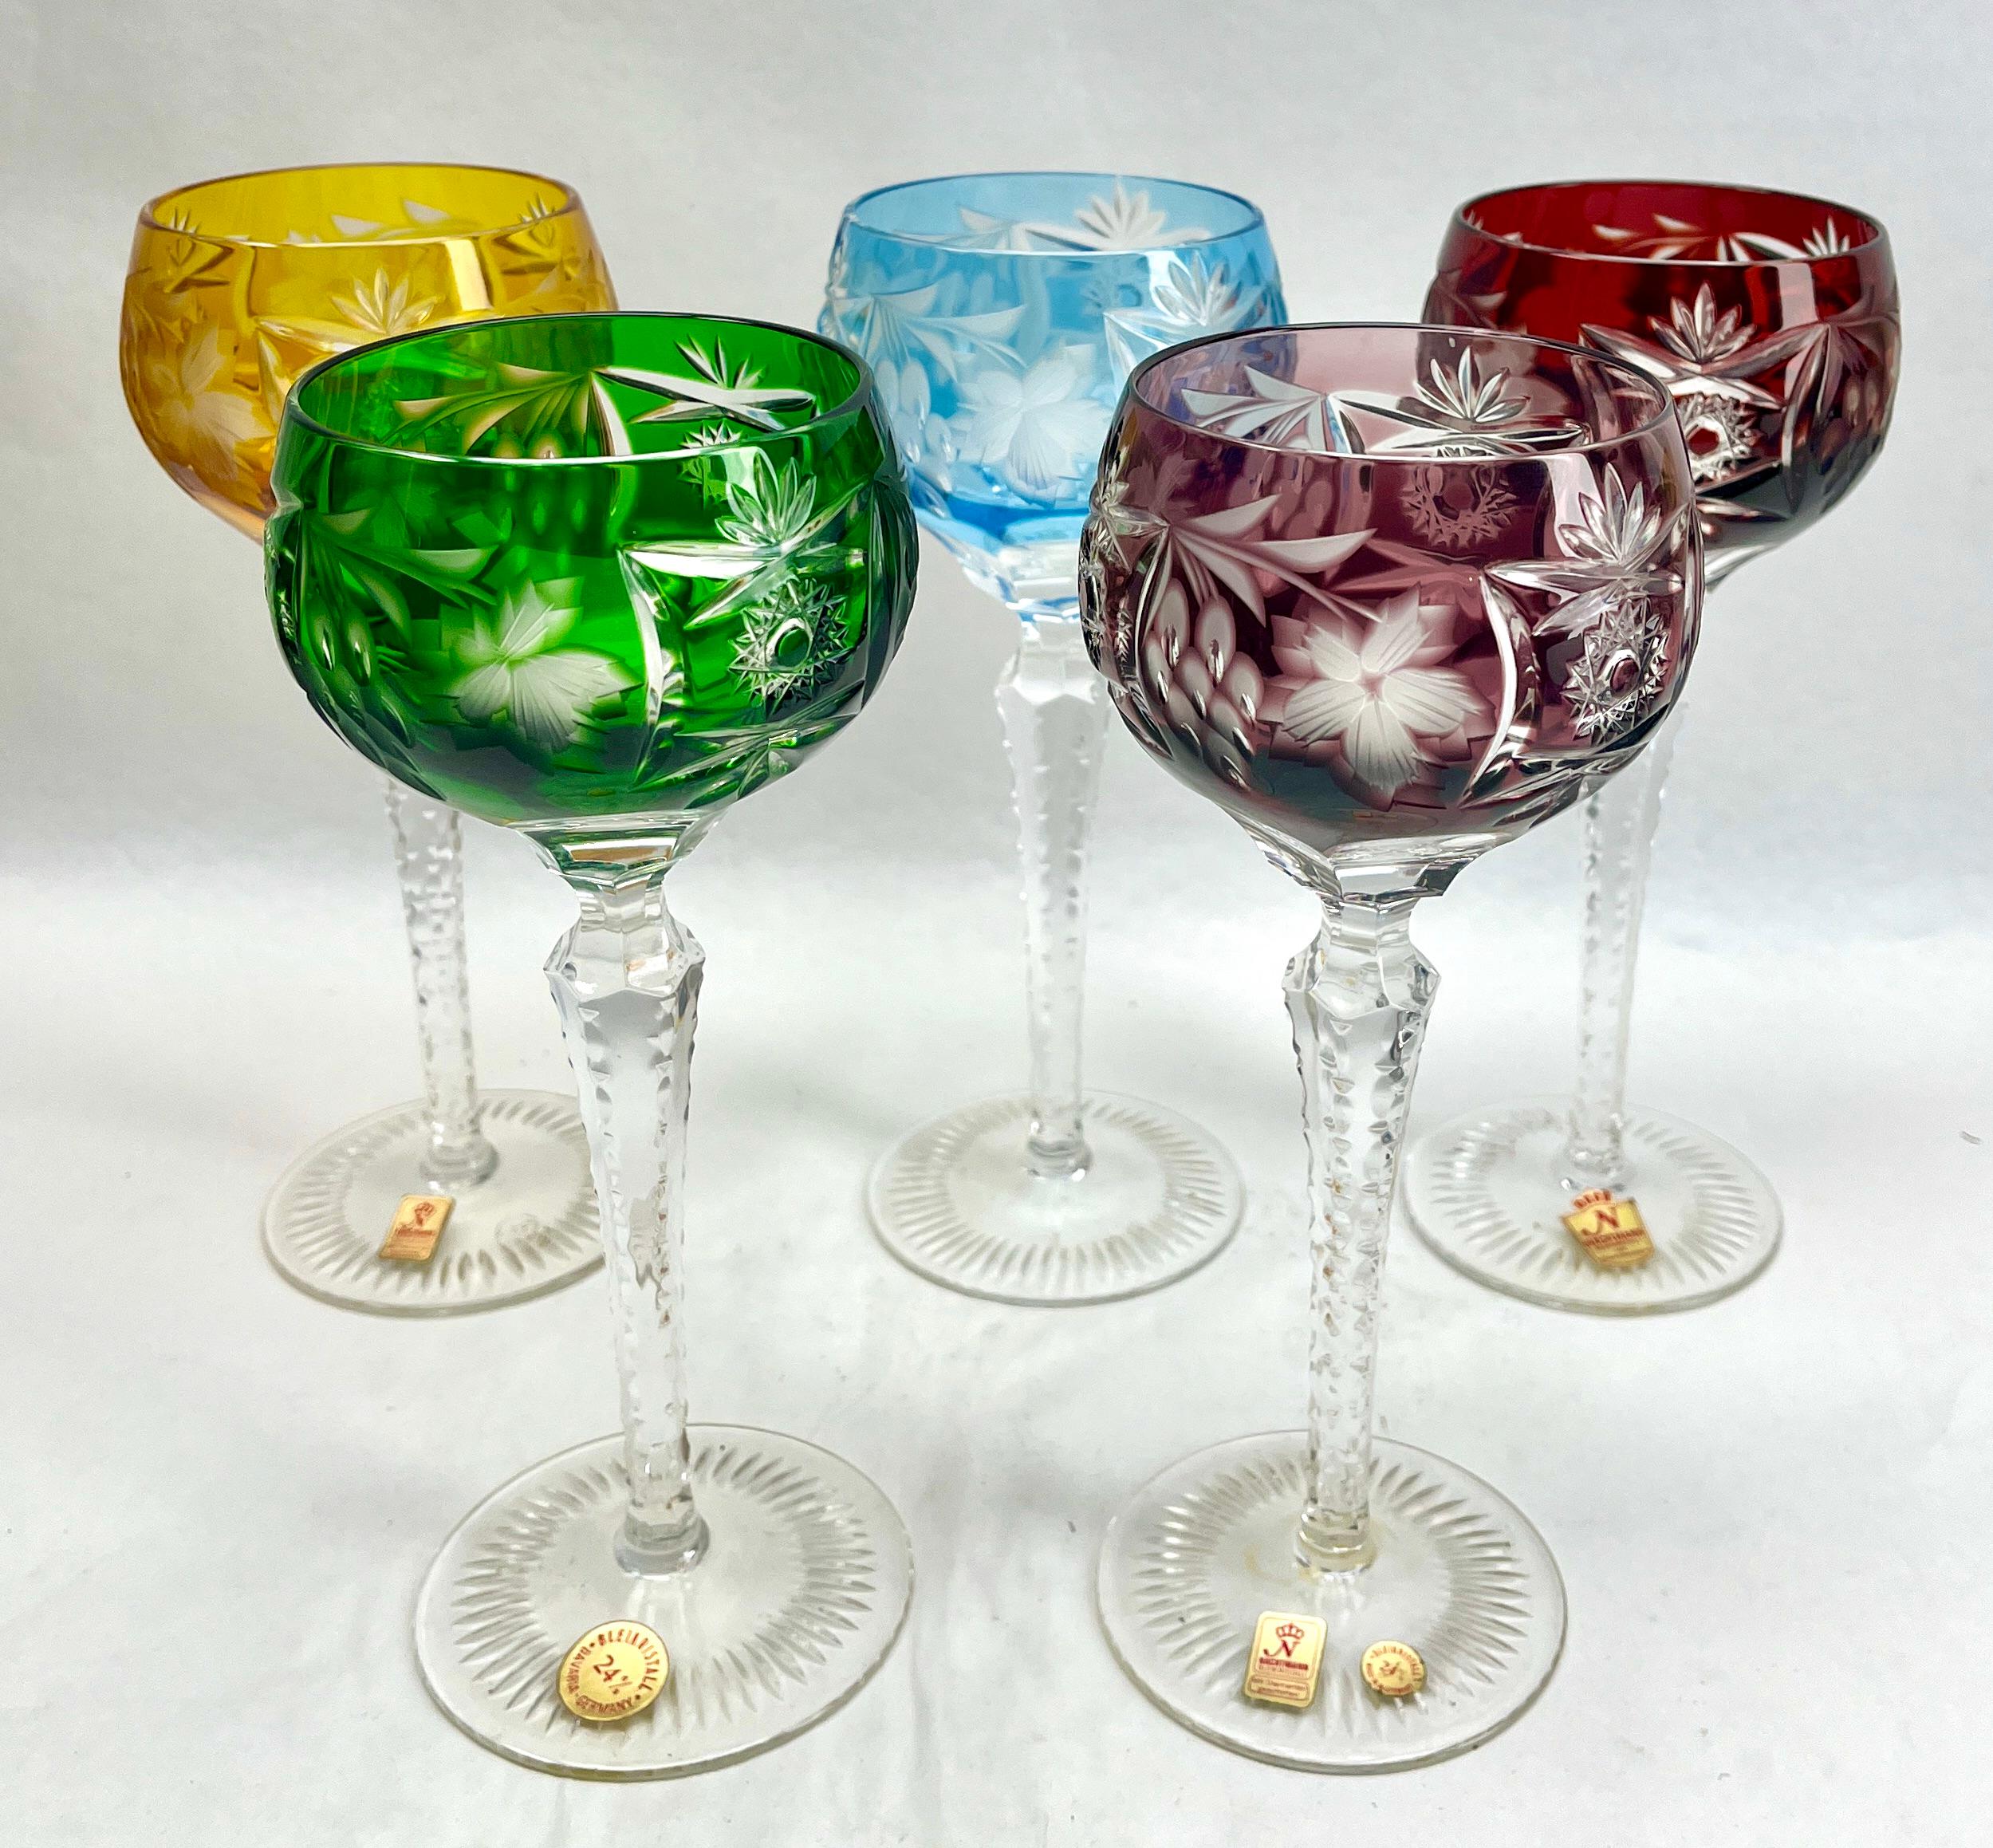 Vintage Set de 5 verres à pied en cristal clair taillé.
Verres mixtes en cristal (Bleikristall 24% Mundgeblasen Handgeschliffen)

Verre demi-cristal transparent. Tige latérale facettée et dentée. 
Le bol est recouvert d'une couche de couleur,